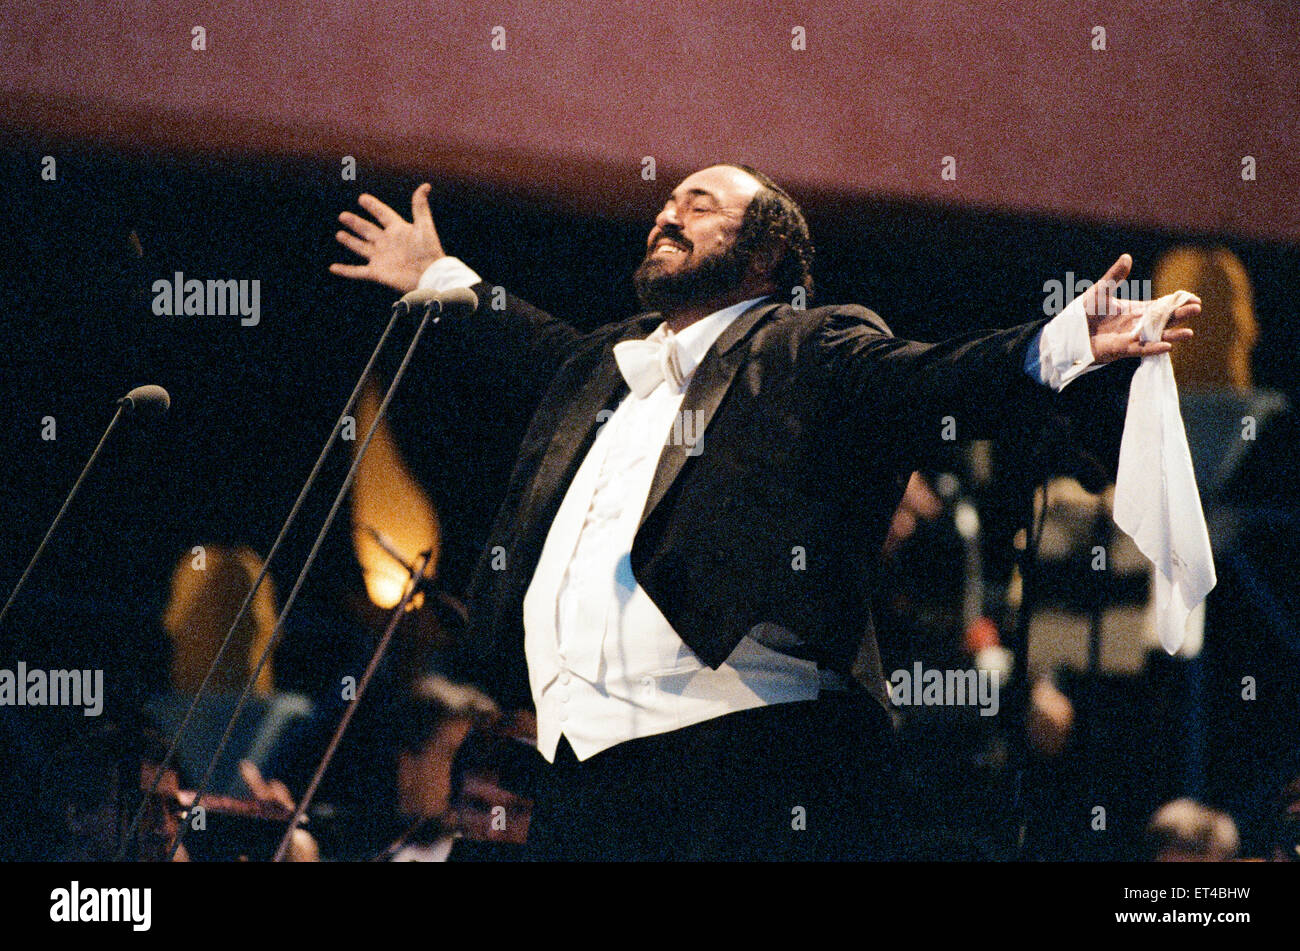 Luciano Pavarotti, el tenor italiano, cantando en un concierto al aire libre en el Hyde Park de Londres. Este fue un concierto gratuito para celebrar sus 30 años en la ópera. El 30 de julio de 1991. Foto de stock